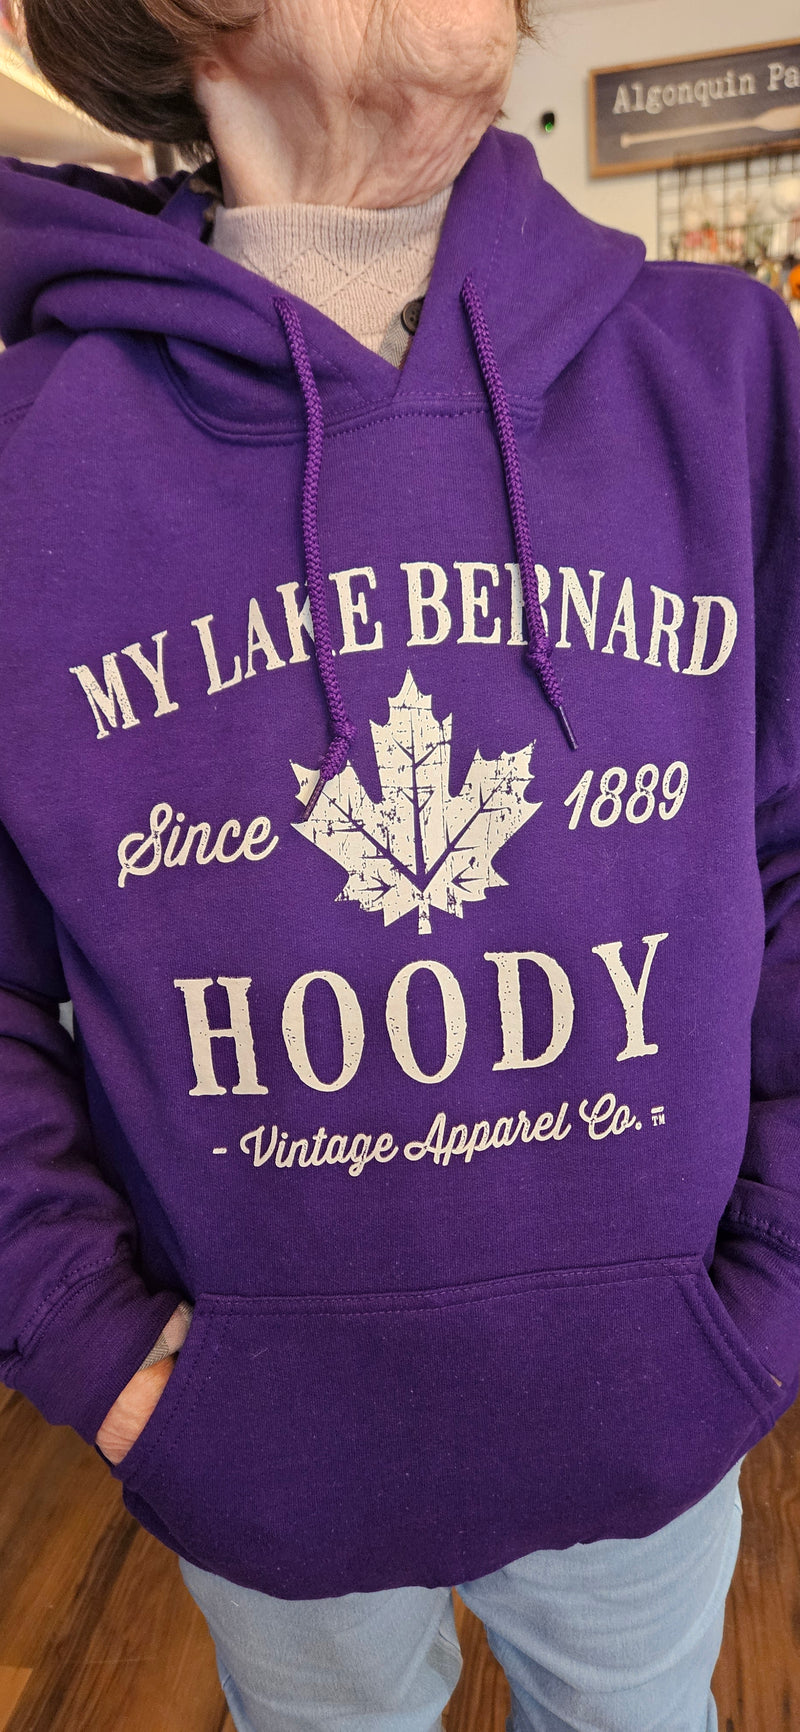 Hoodie : "My Lake Bernard Hoody"